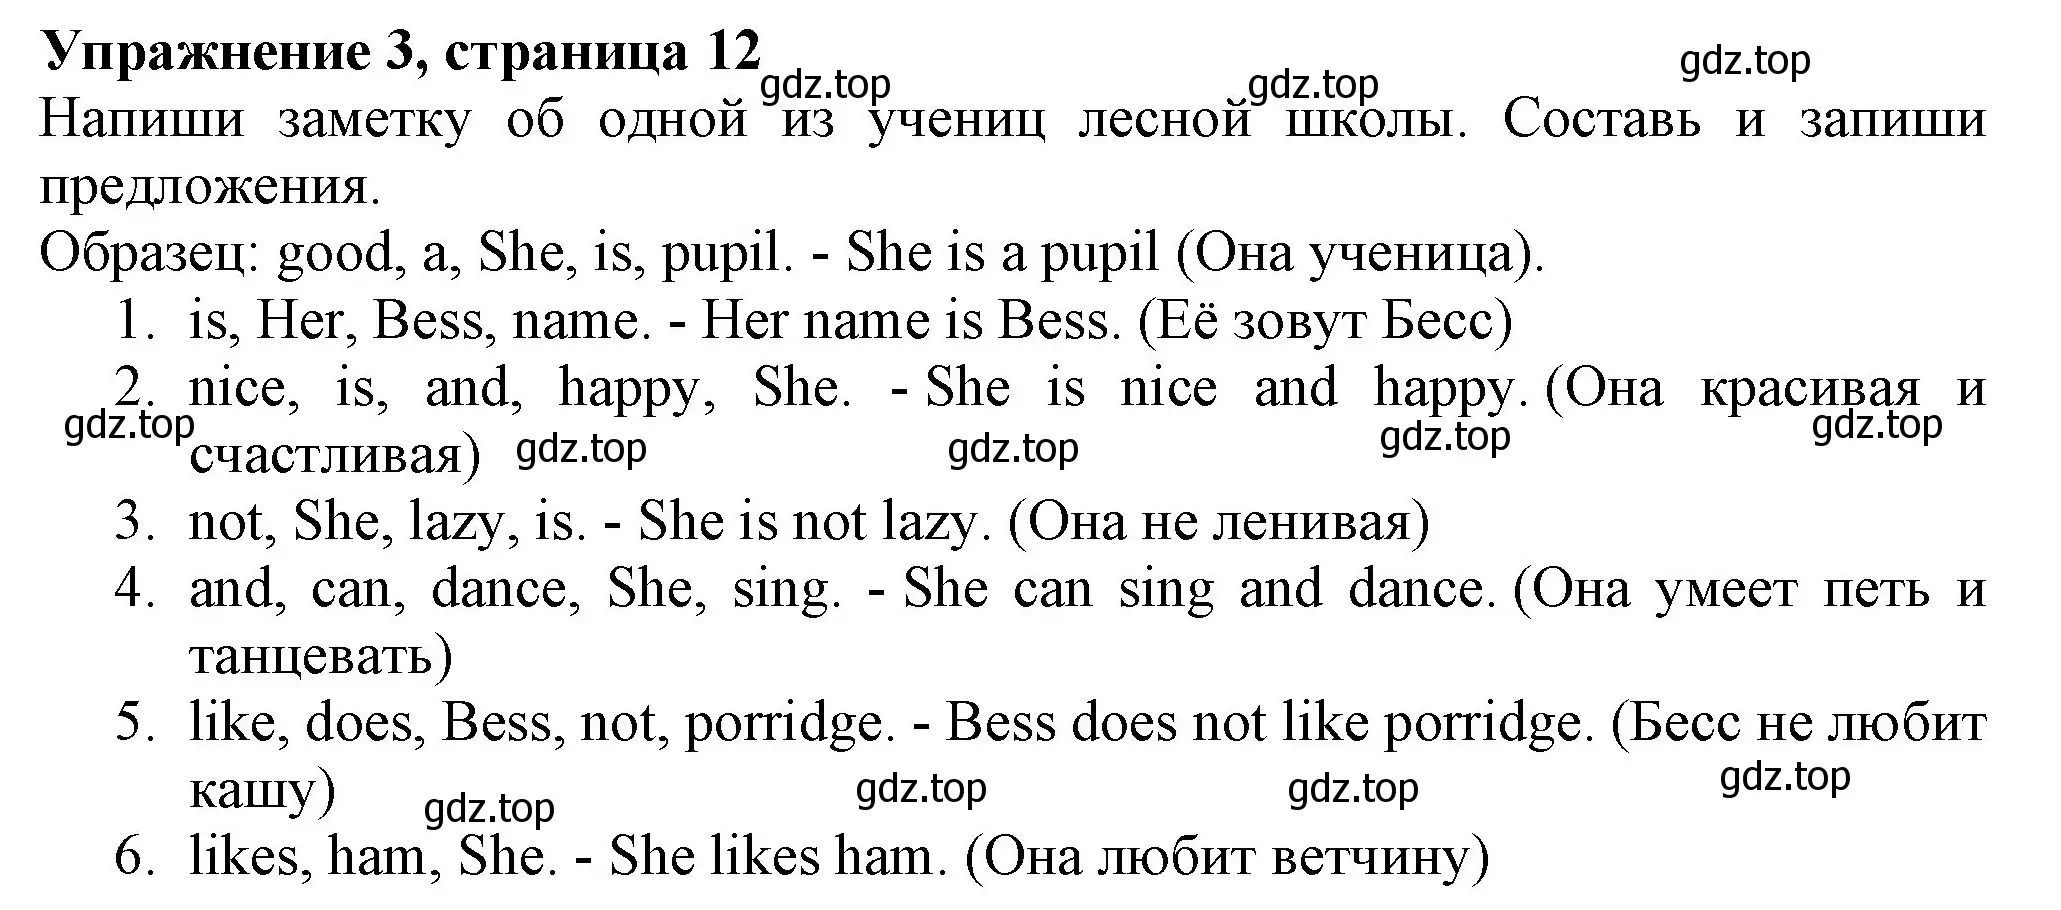 Решение номер 3 (страница 12) гдз по английскому языку 3 класс Биболетова, Денисенко, рабочая тетрадь